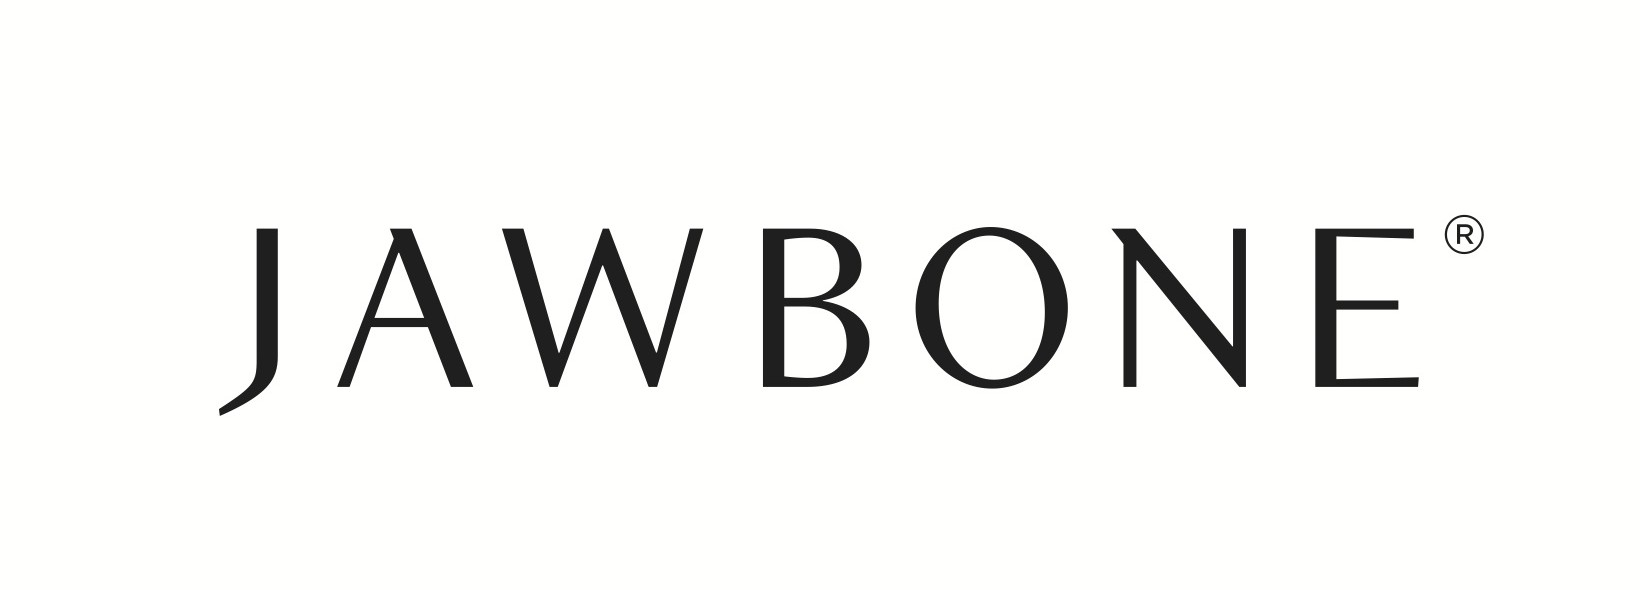 Jawbone_logo.jpg